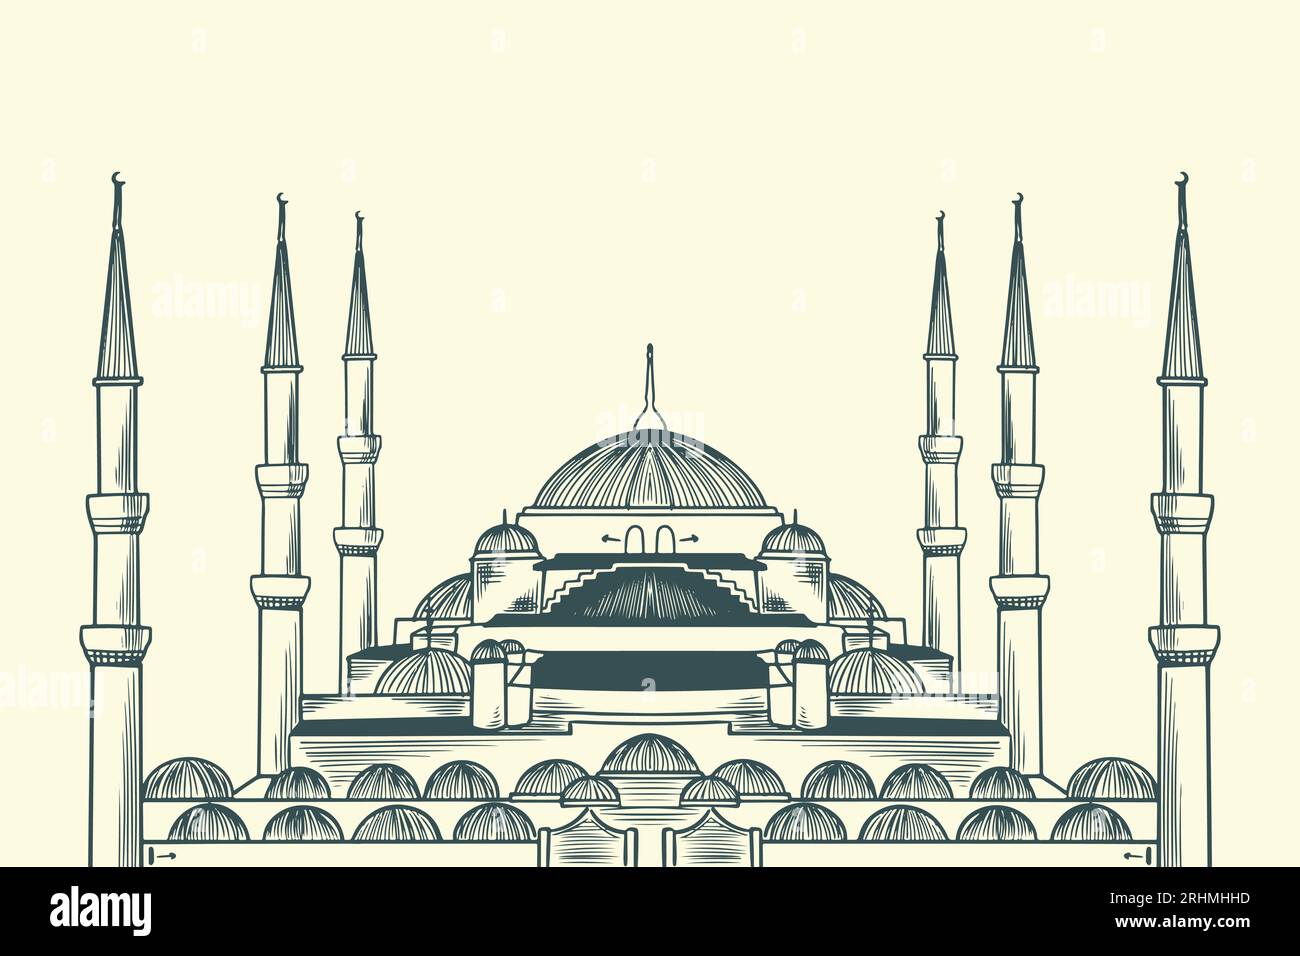 Disegno a mano dell'edificio islamico del sultano Ahmed, la moschea blu. Illustrazione Vettoriale